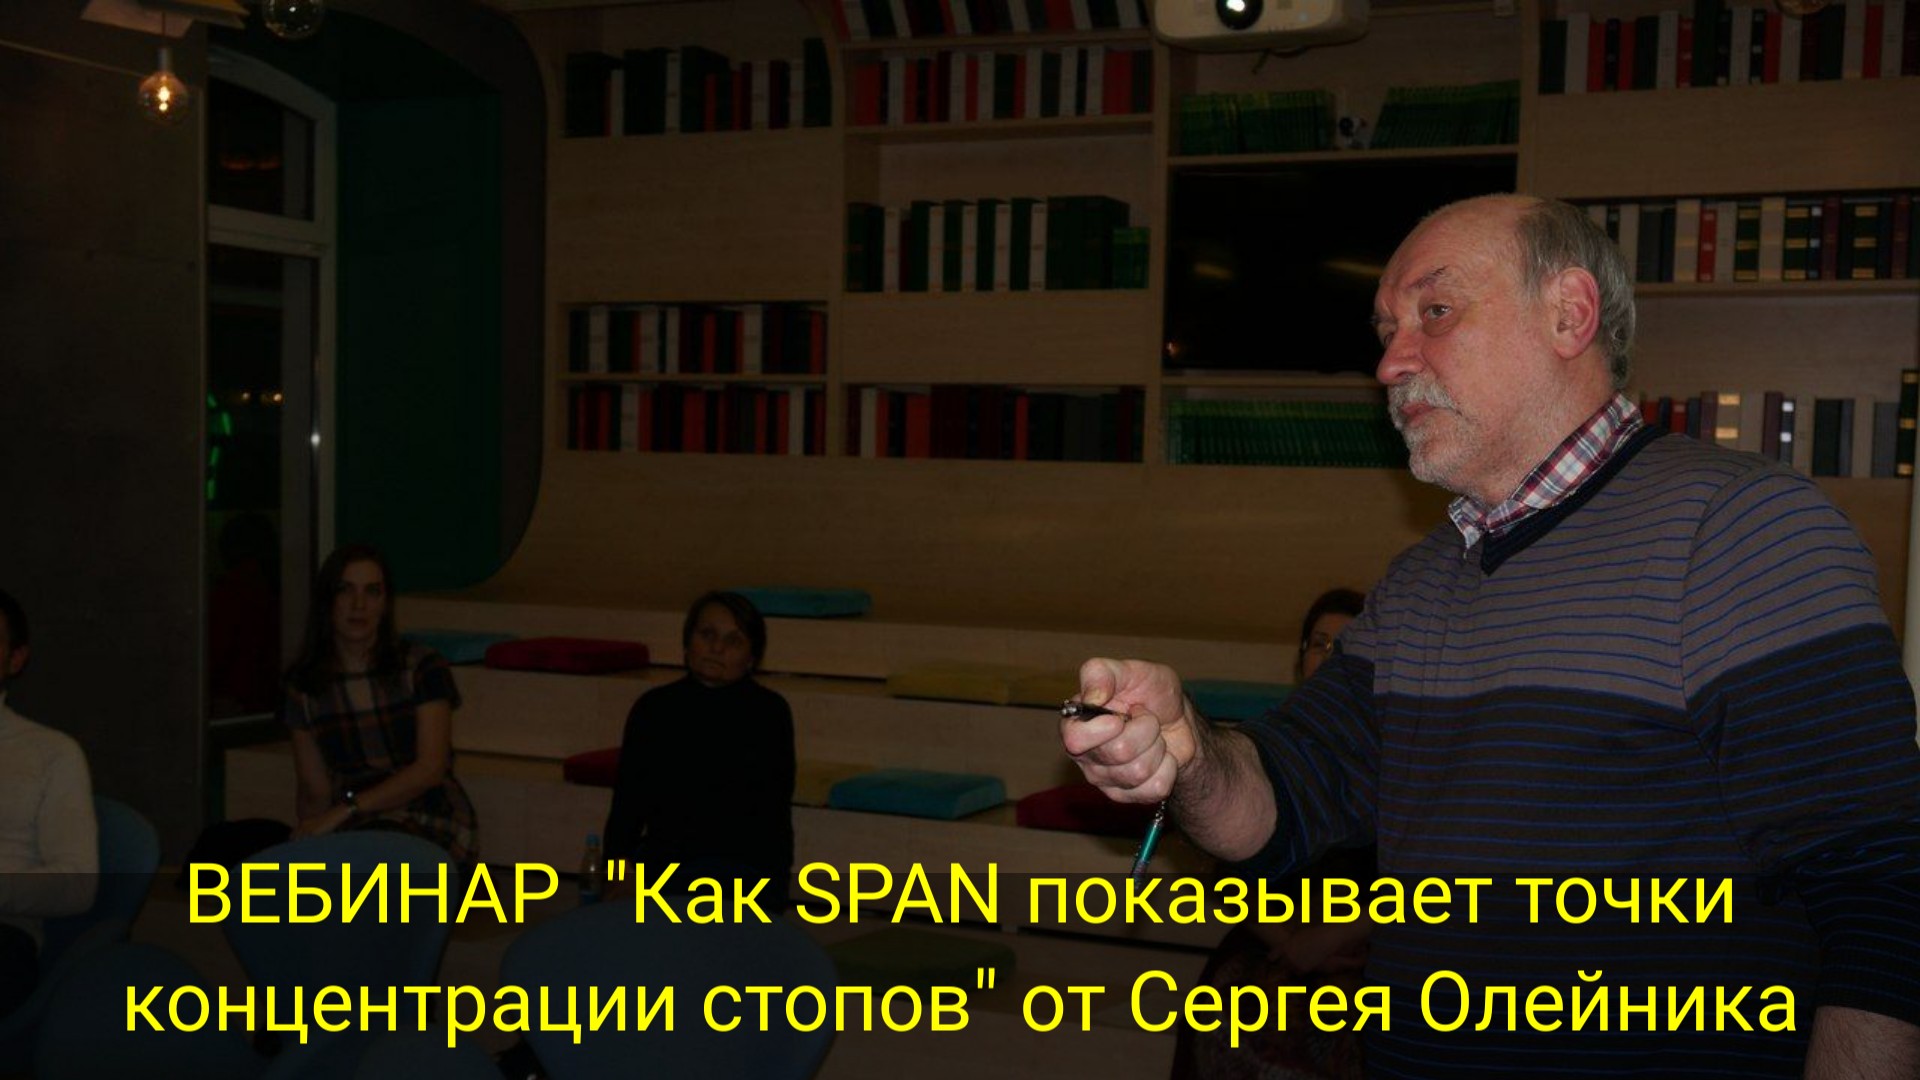 ВЕБИНАР "Как SPAN показывает точки концентрации стопов" от Сергея Олейника